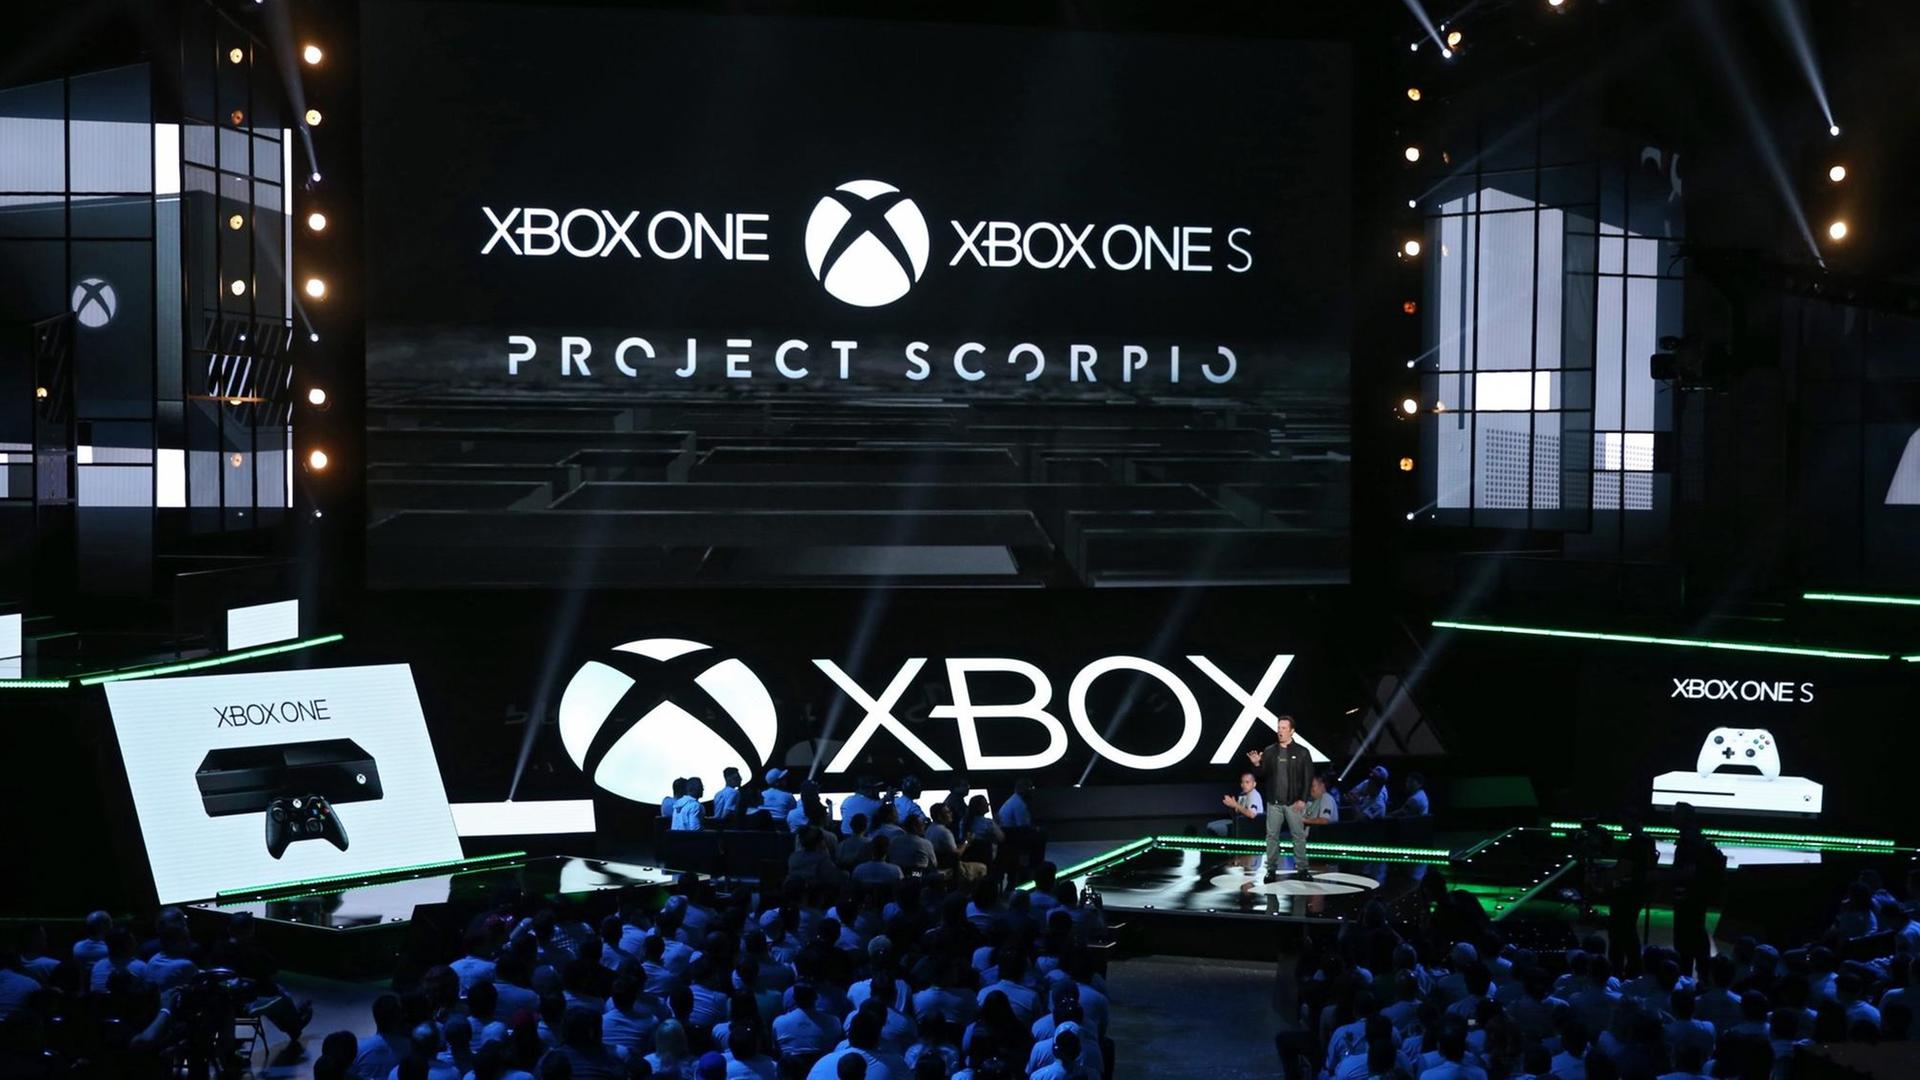 Phil Spencer, bei Microsoft verantwortlich für die Xbox, spricht über die nächste Generation der Xbox-Konsole, das sogenannte "Project Scorpio", die 2017 auf den Markt kommen soll.